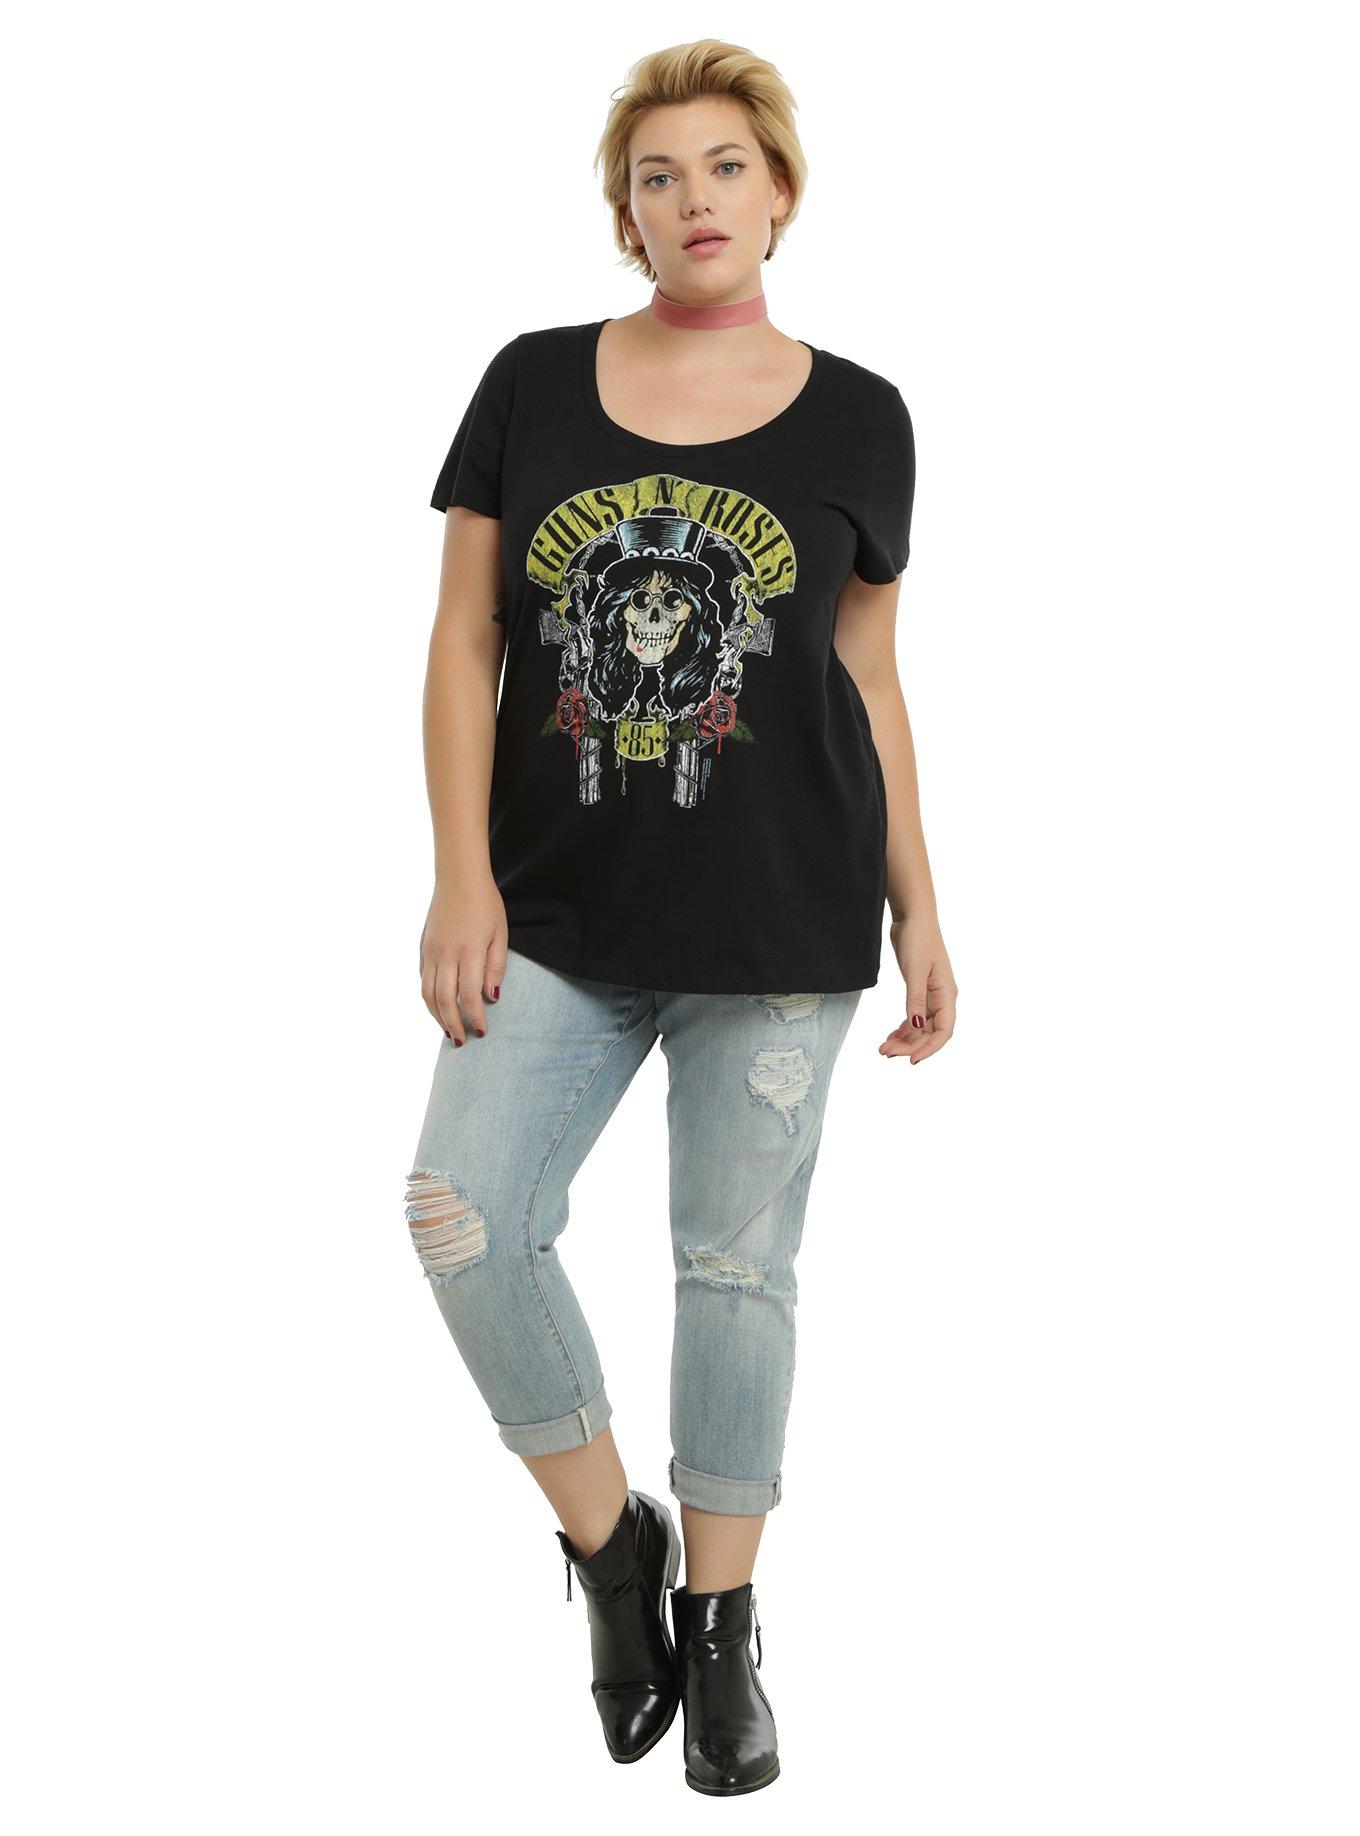 Guns N' Roses Skull Girls T-Shirt Plus Size , , alternate